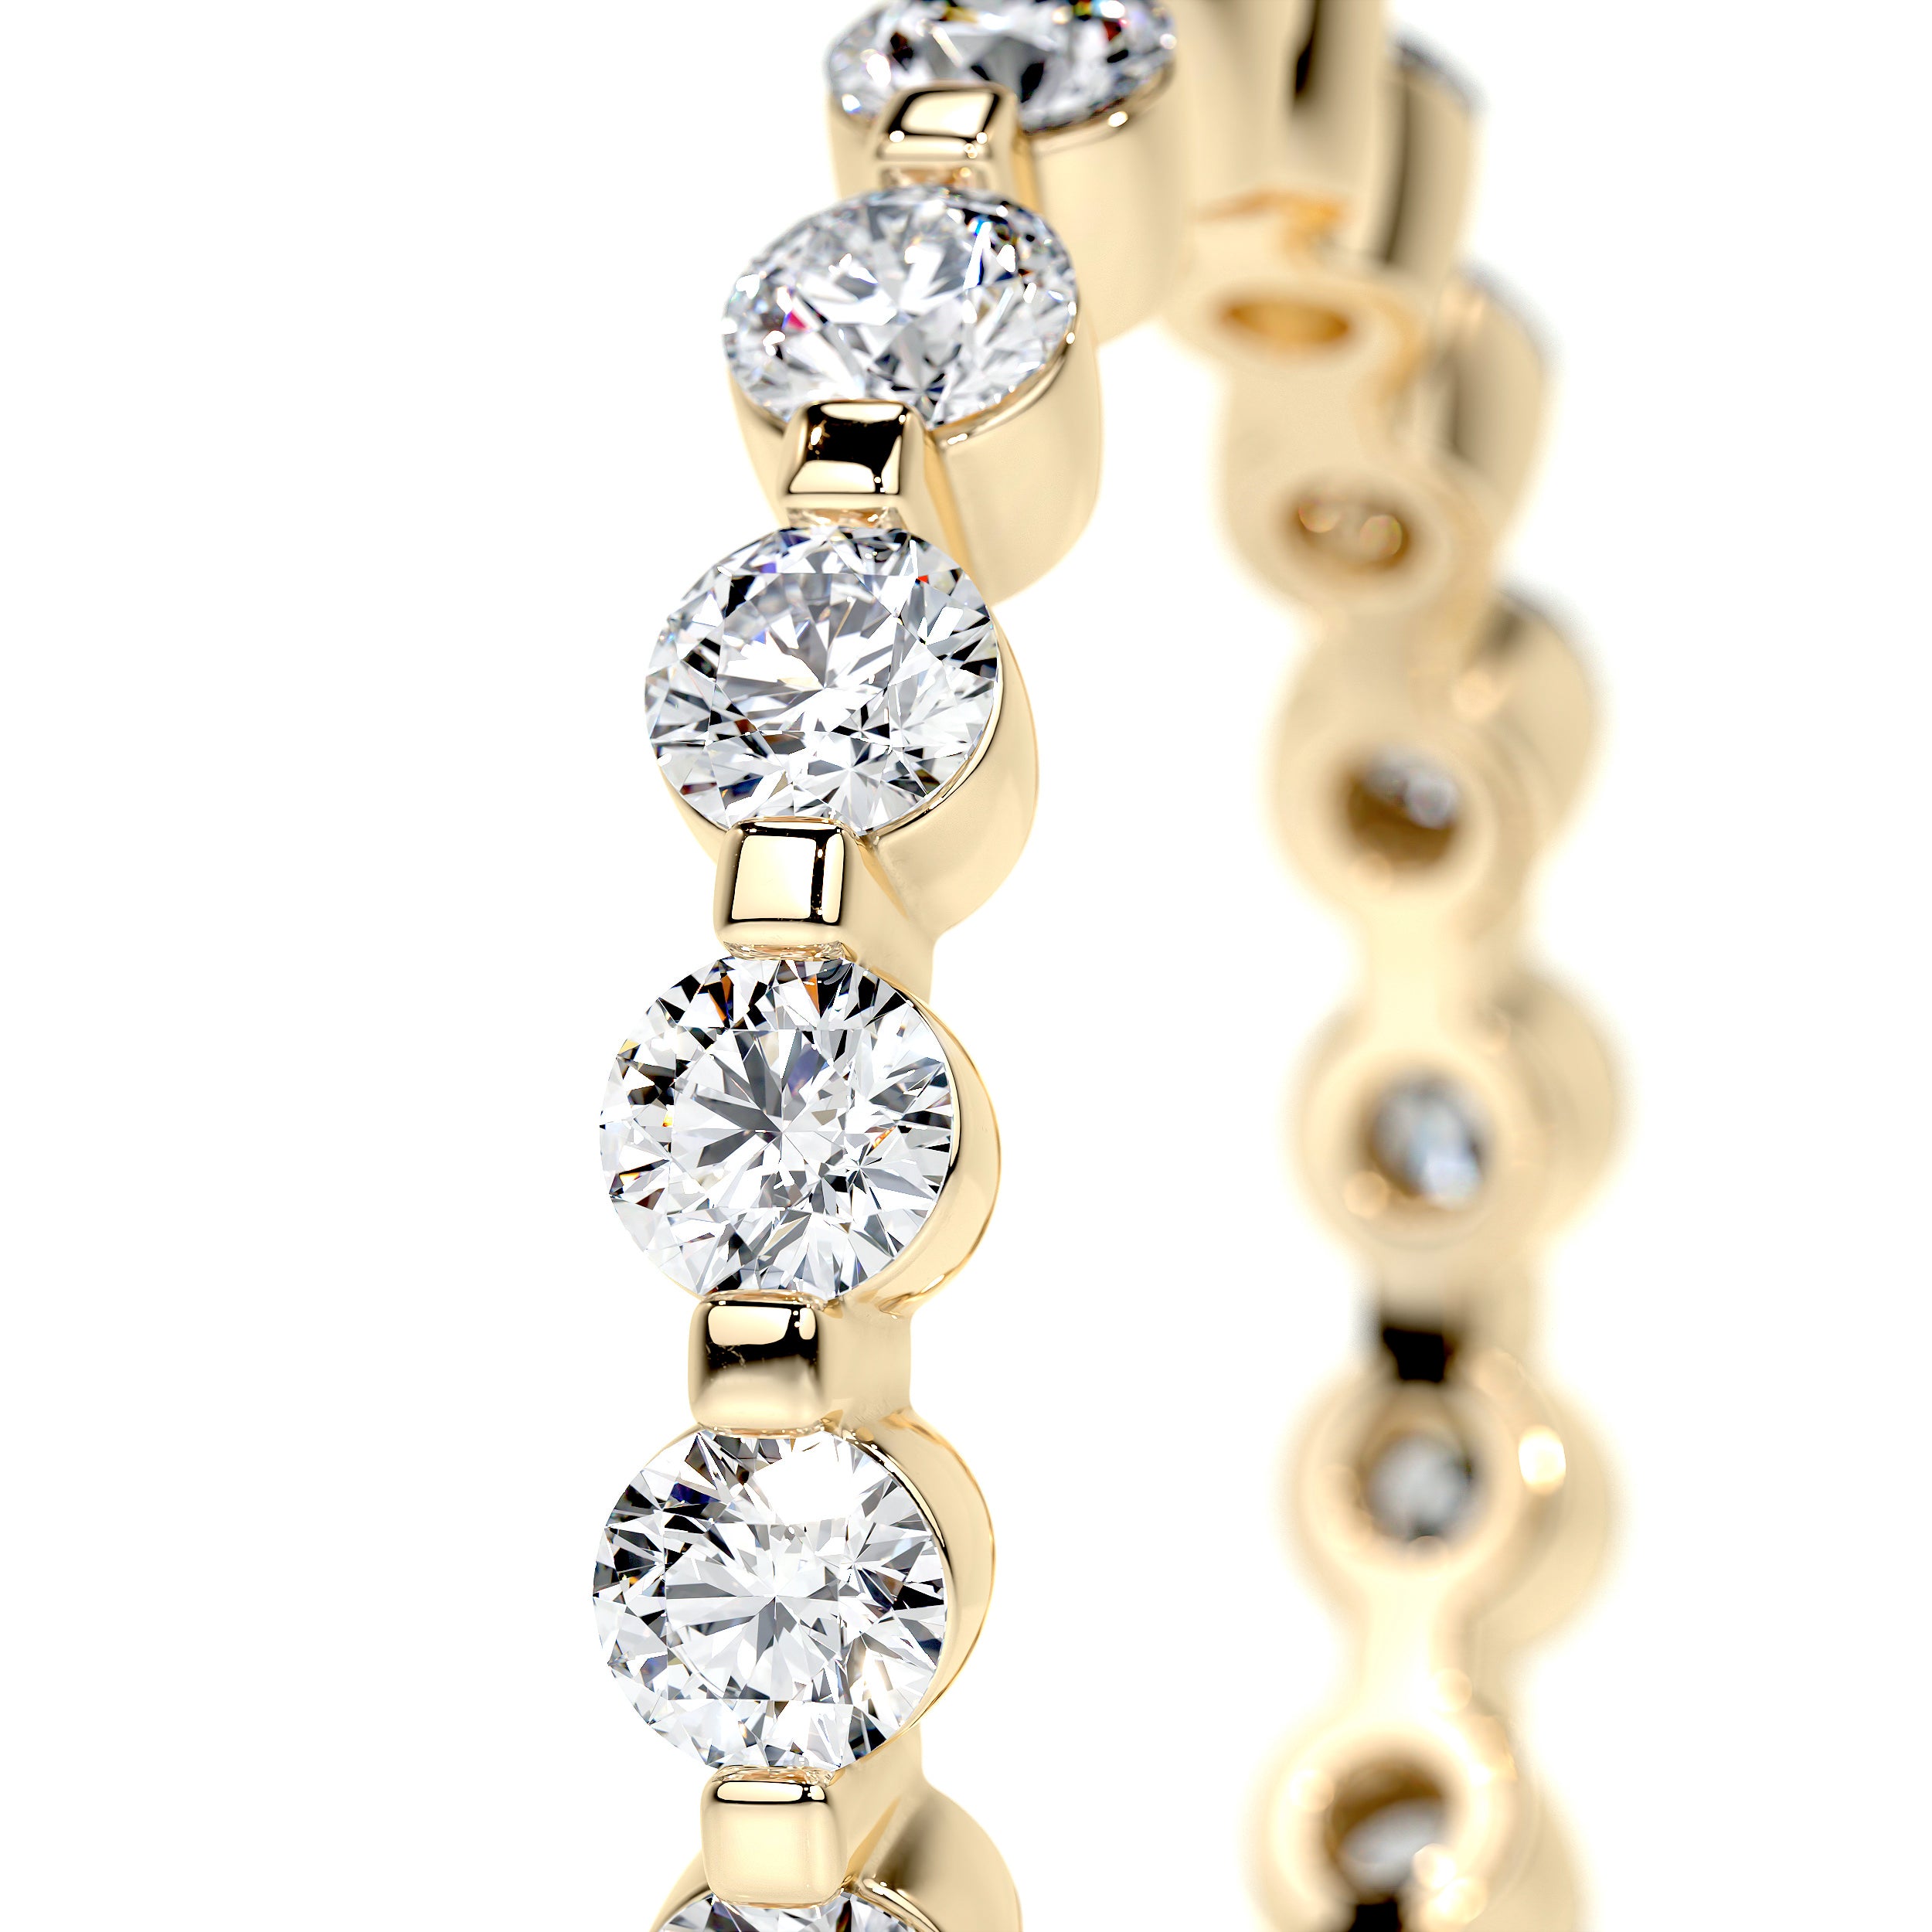 Josie Lab Grown Eternity Wedding Ring   (1.75 Carat) -18K Yellow Gold